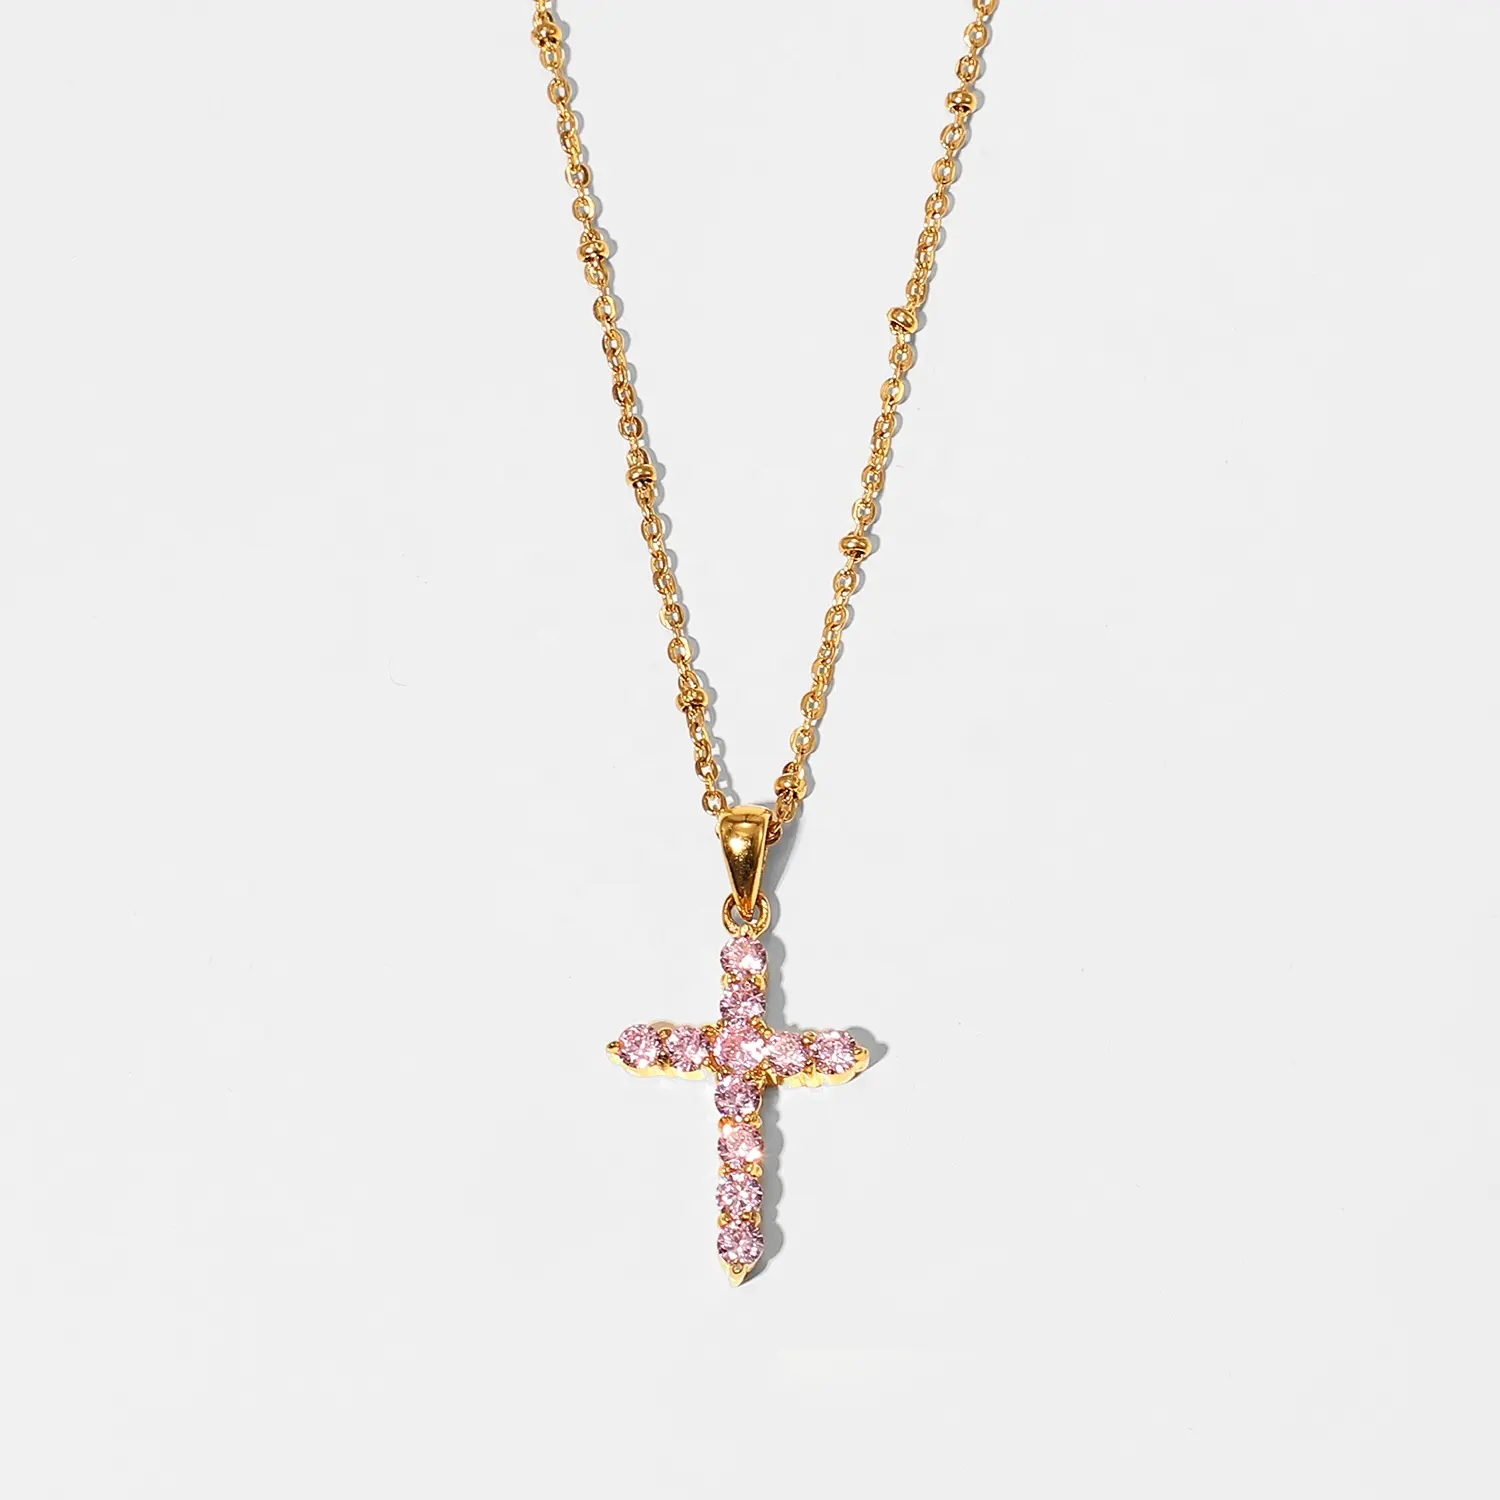 Винтажное позолоченное ожерелье 18K PVD с перекрестным цирконием, ожерелья с кулоном в виде креста из розового циркония